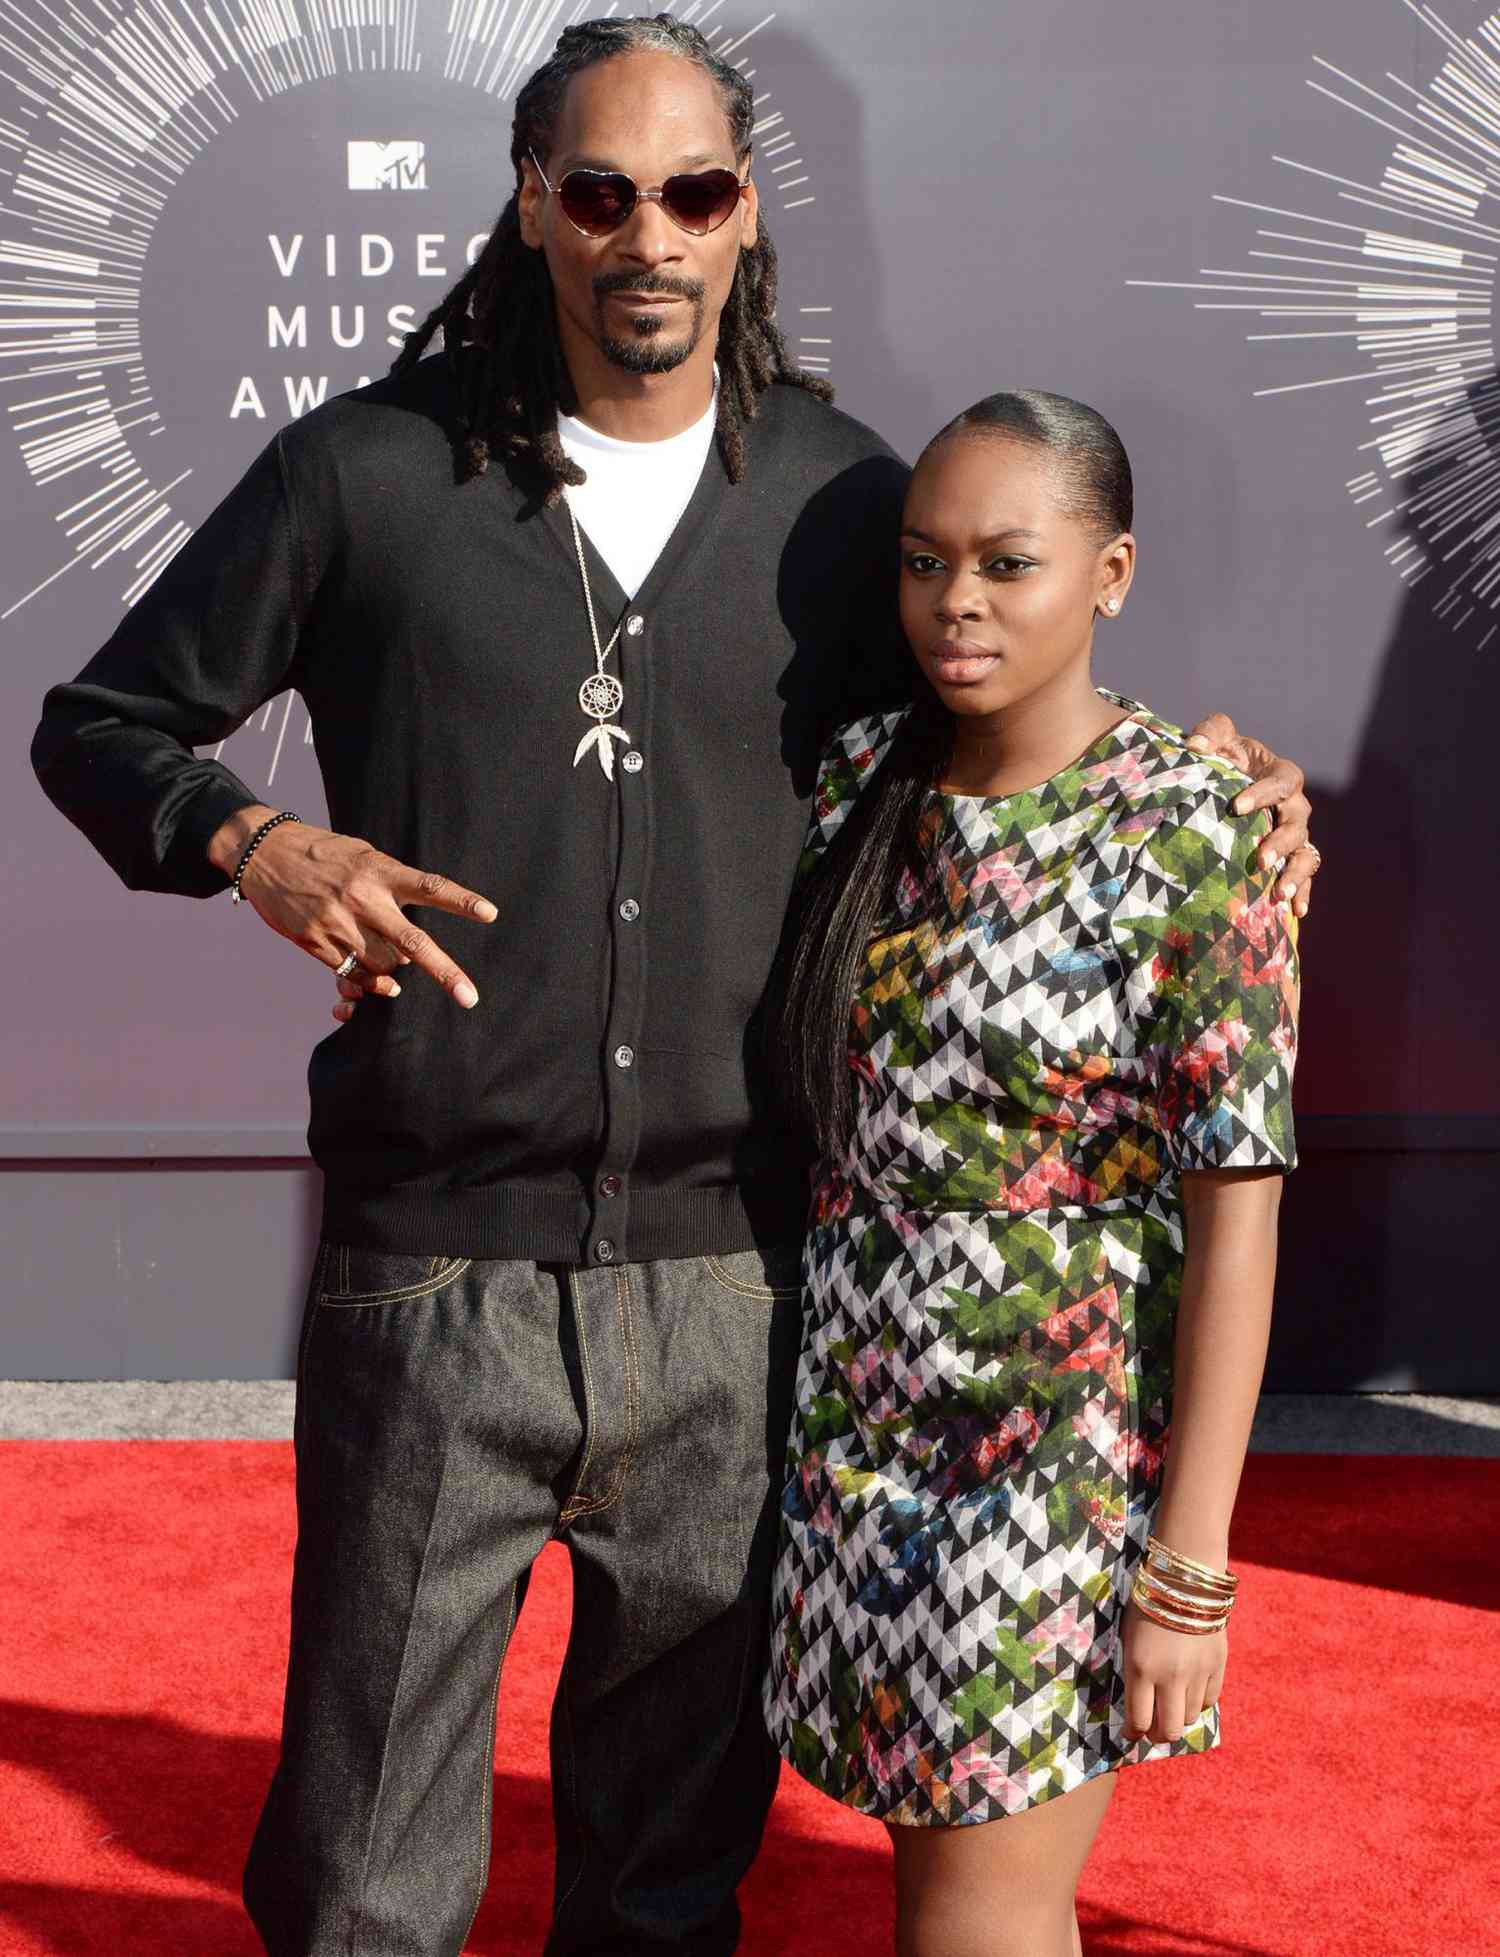 fiica lui Snoop Dogg, Cori, vorbește despre sănătatea mintală după o tentativă de sinucidere: Apreciază-ți viața'